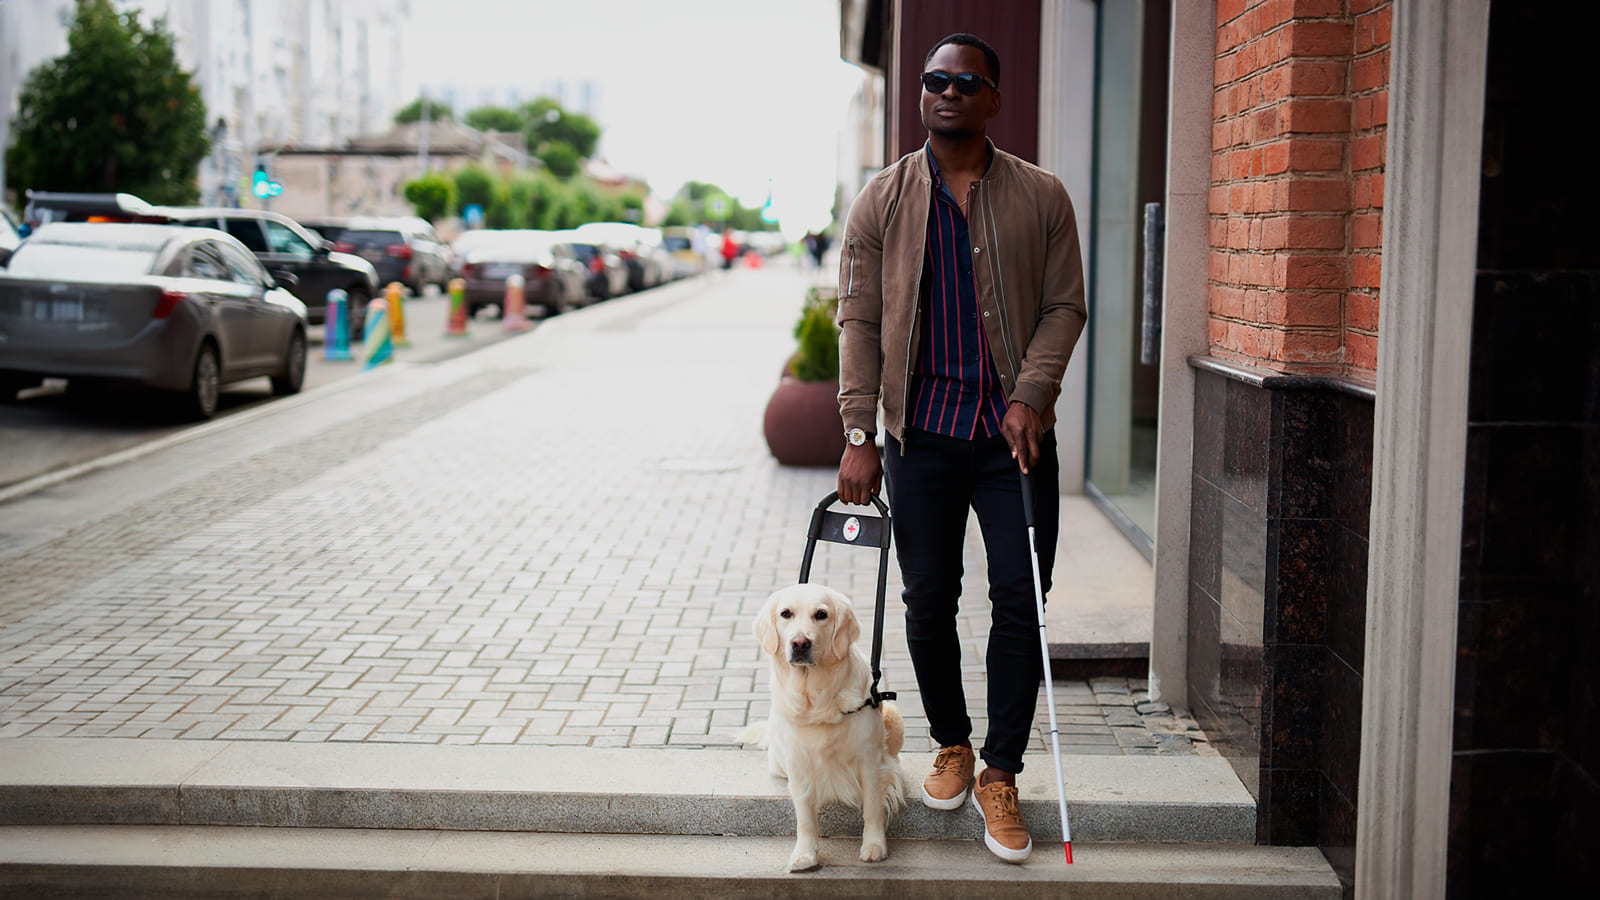 Pessoa com deficiência visual acompanhada por um cão-guia em ambiente urbano. Curso de Reabilitação Visual Gratuito.